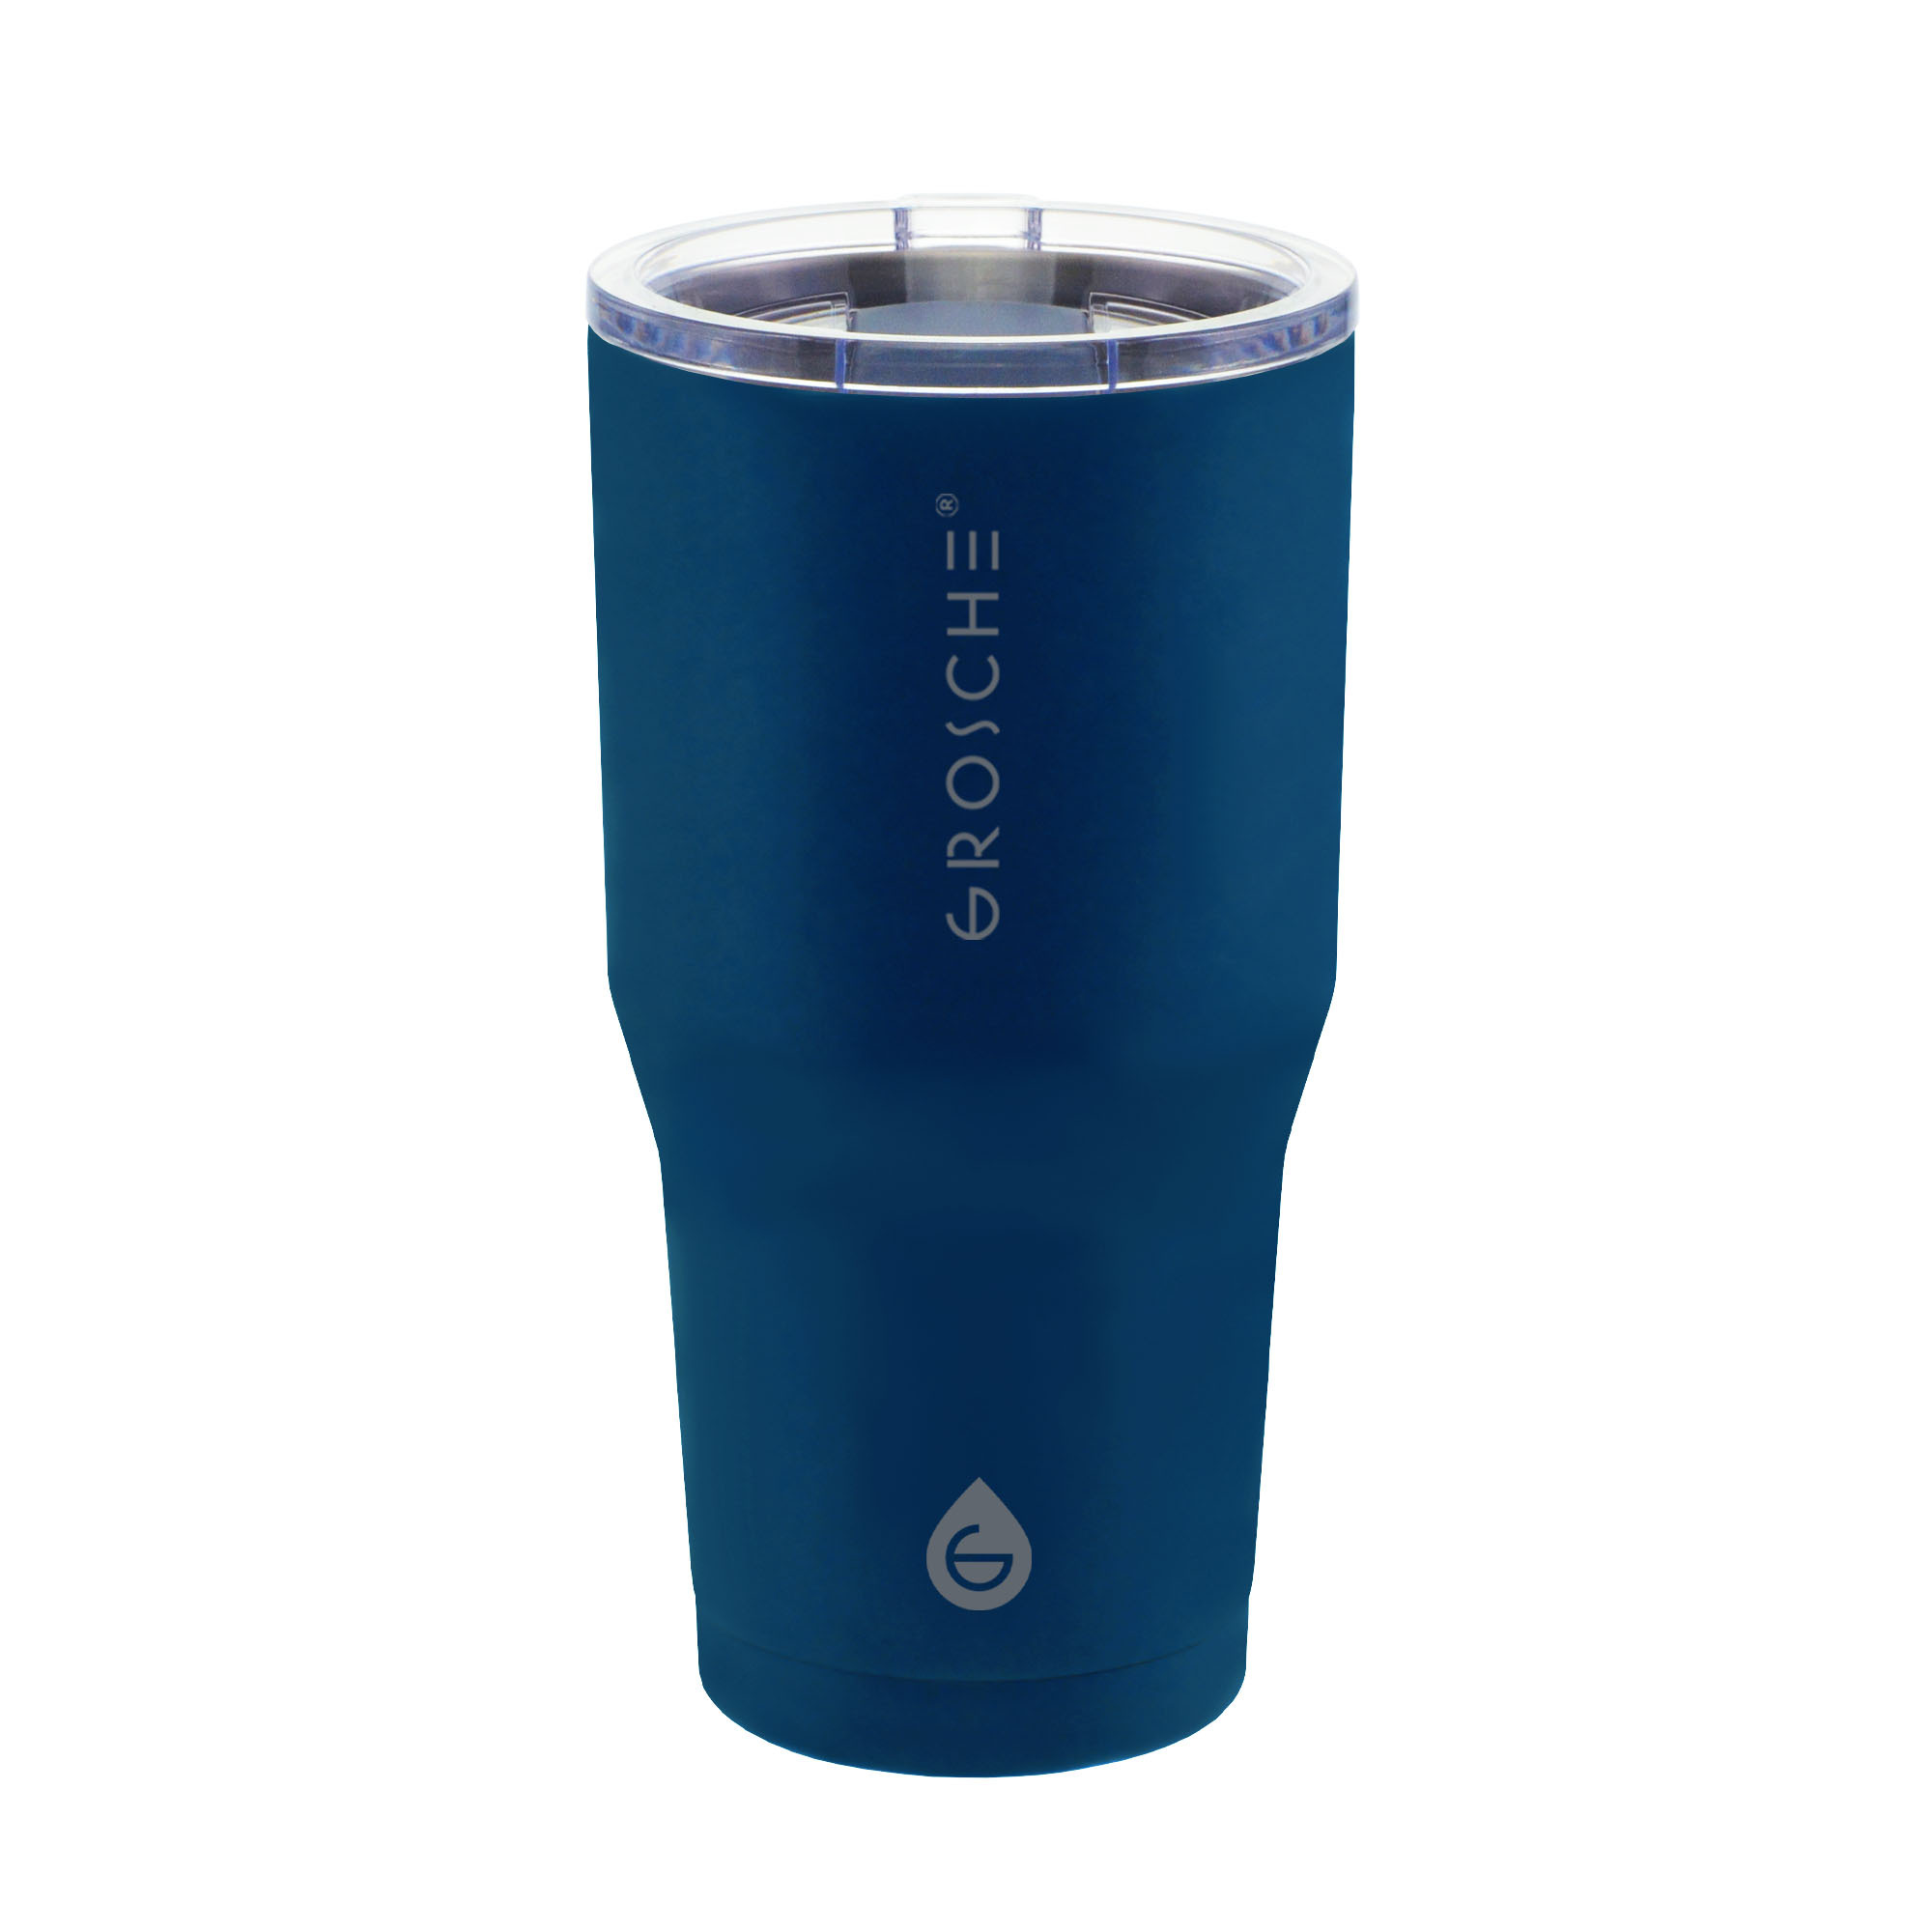 YUKON 20oz Insulated Coffee Tumbler, Insulated Tumbler, coffee mug, travel mug, blue coffee tumbler